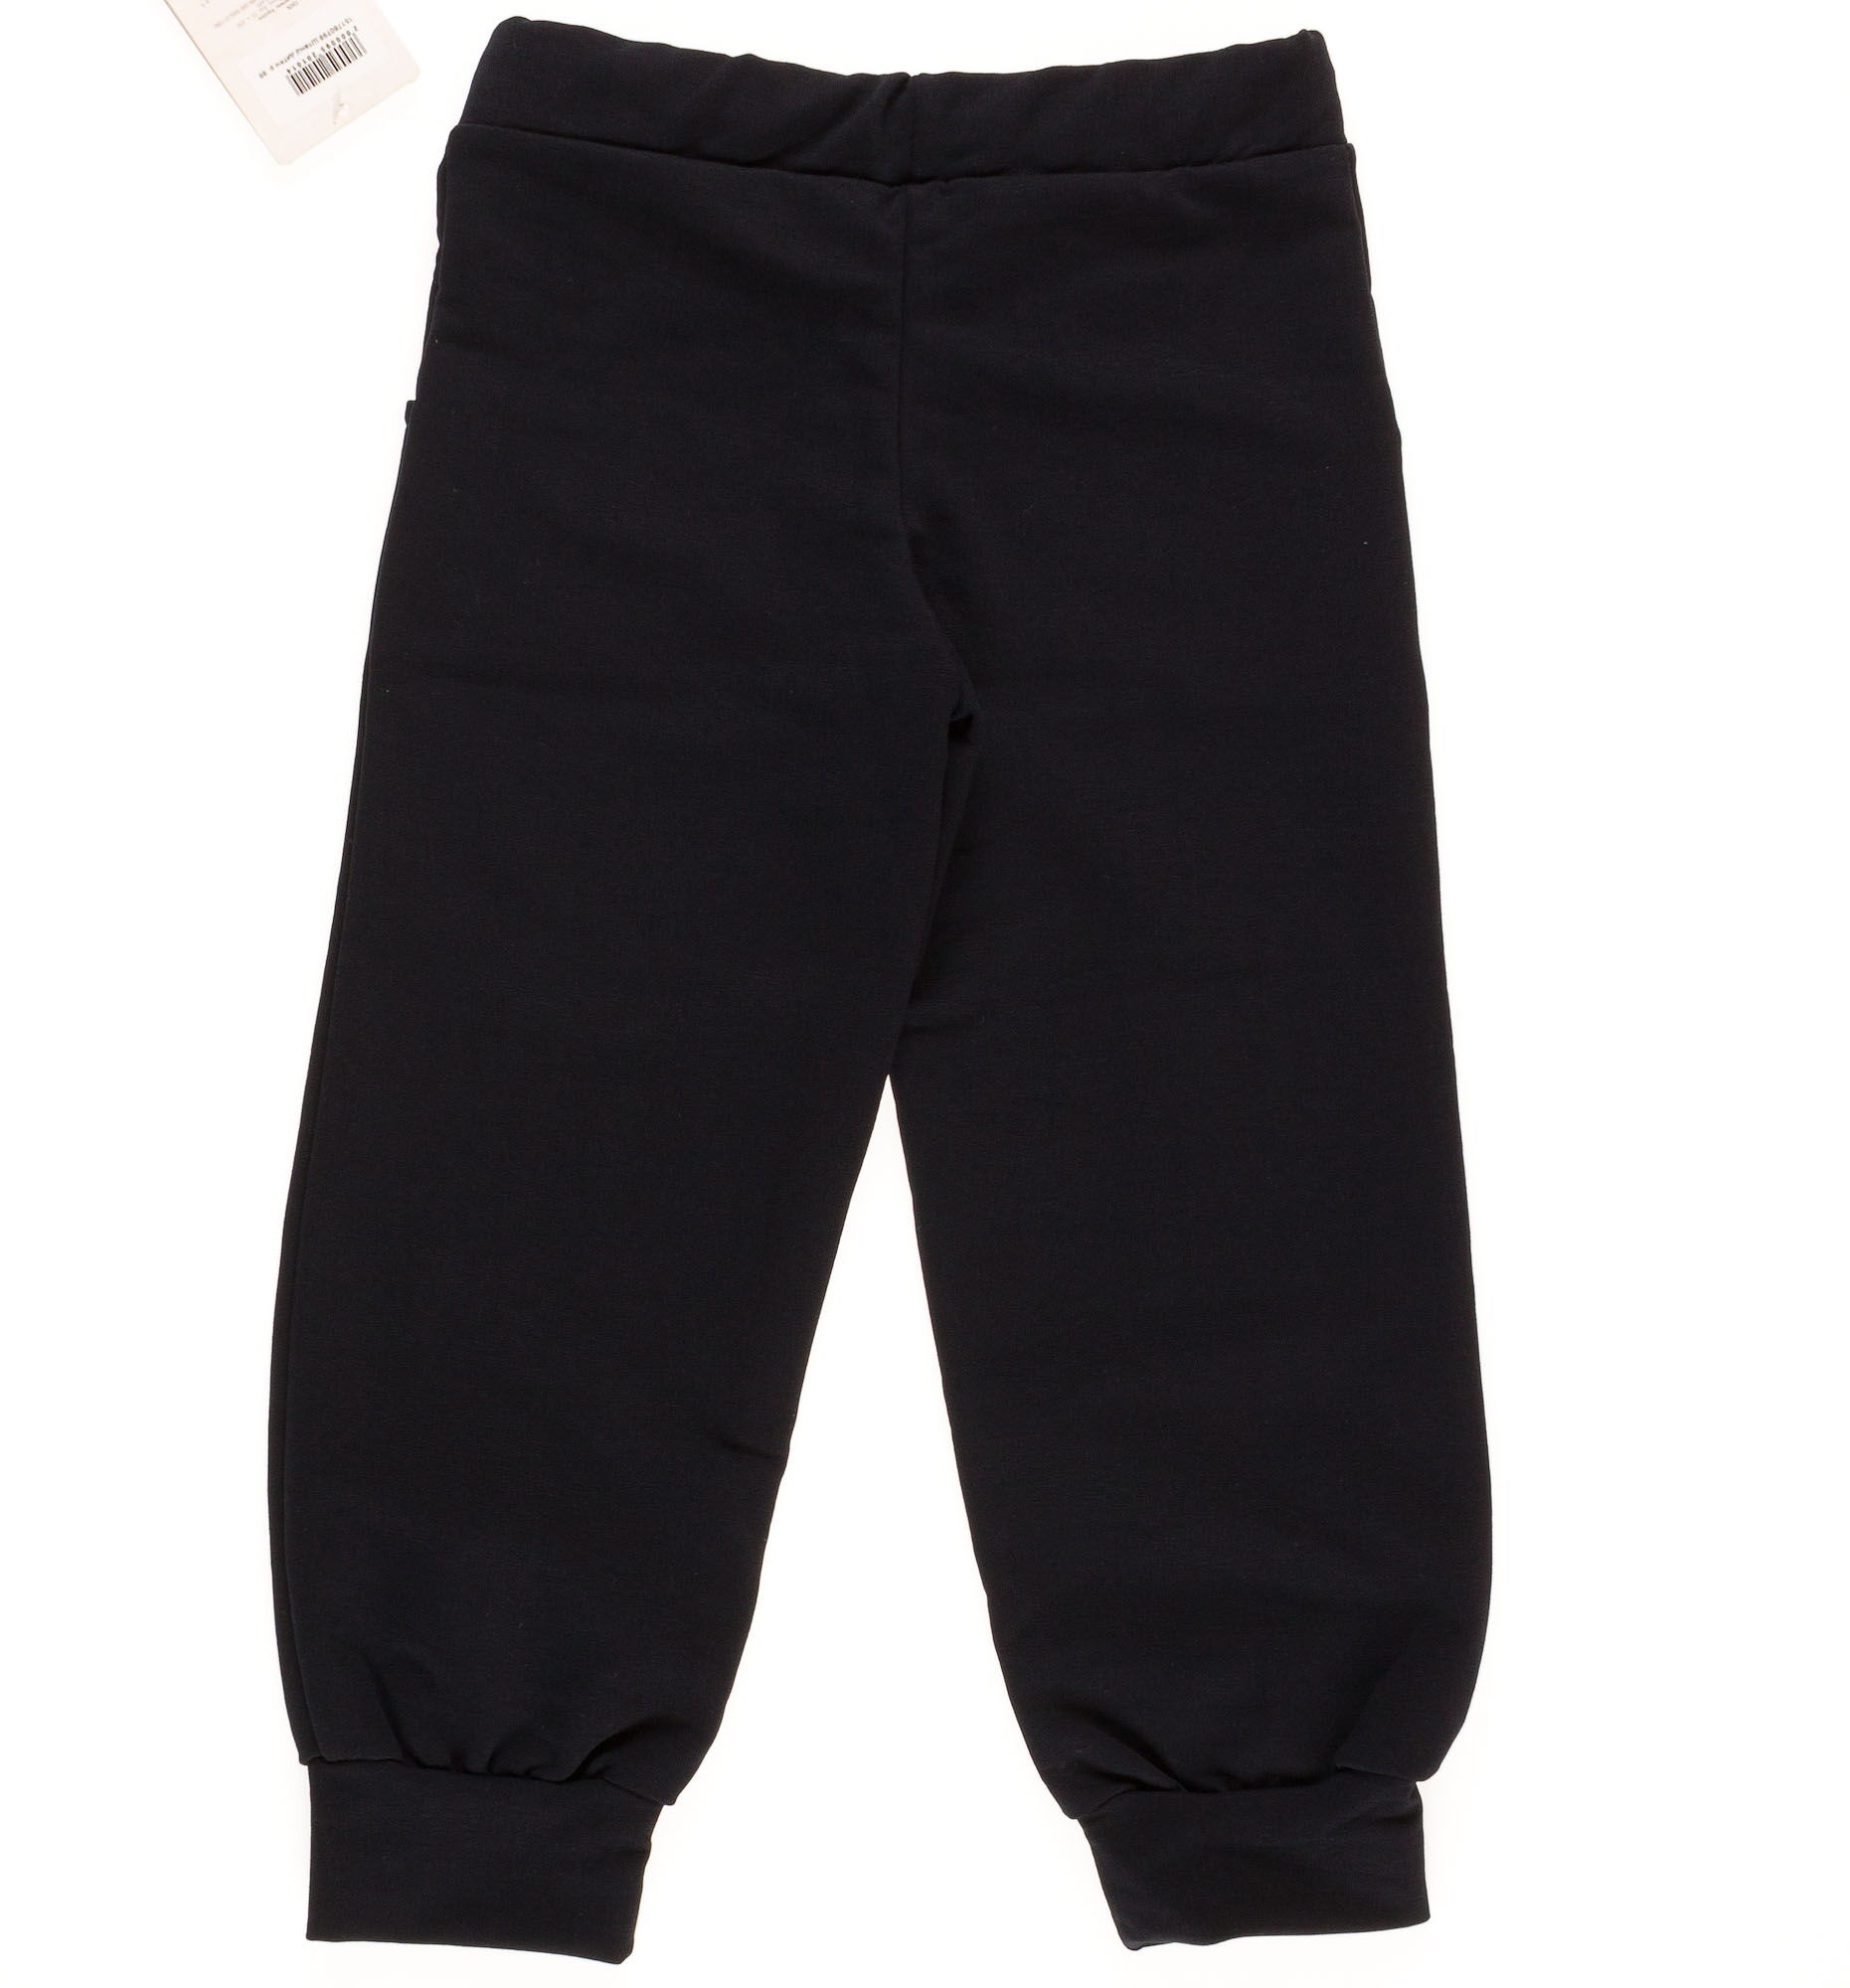 Спортивные штаны MINI темно-синие 1517807 - размеры